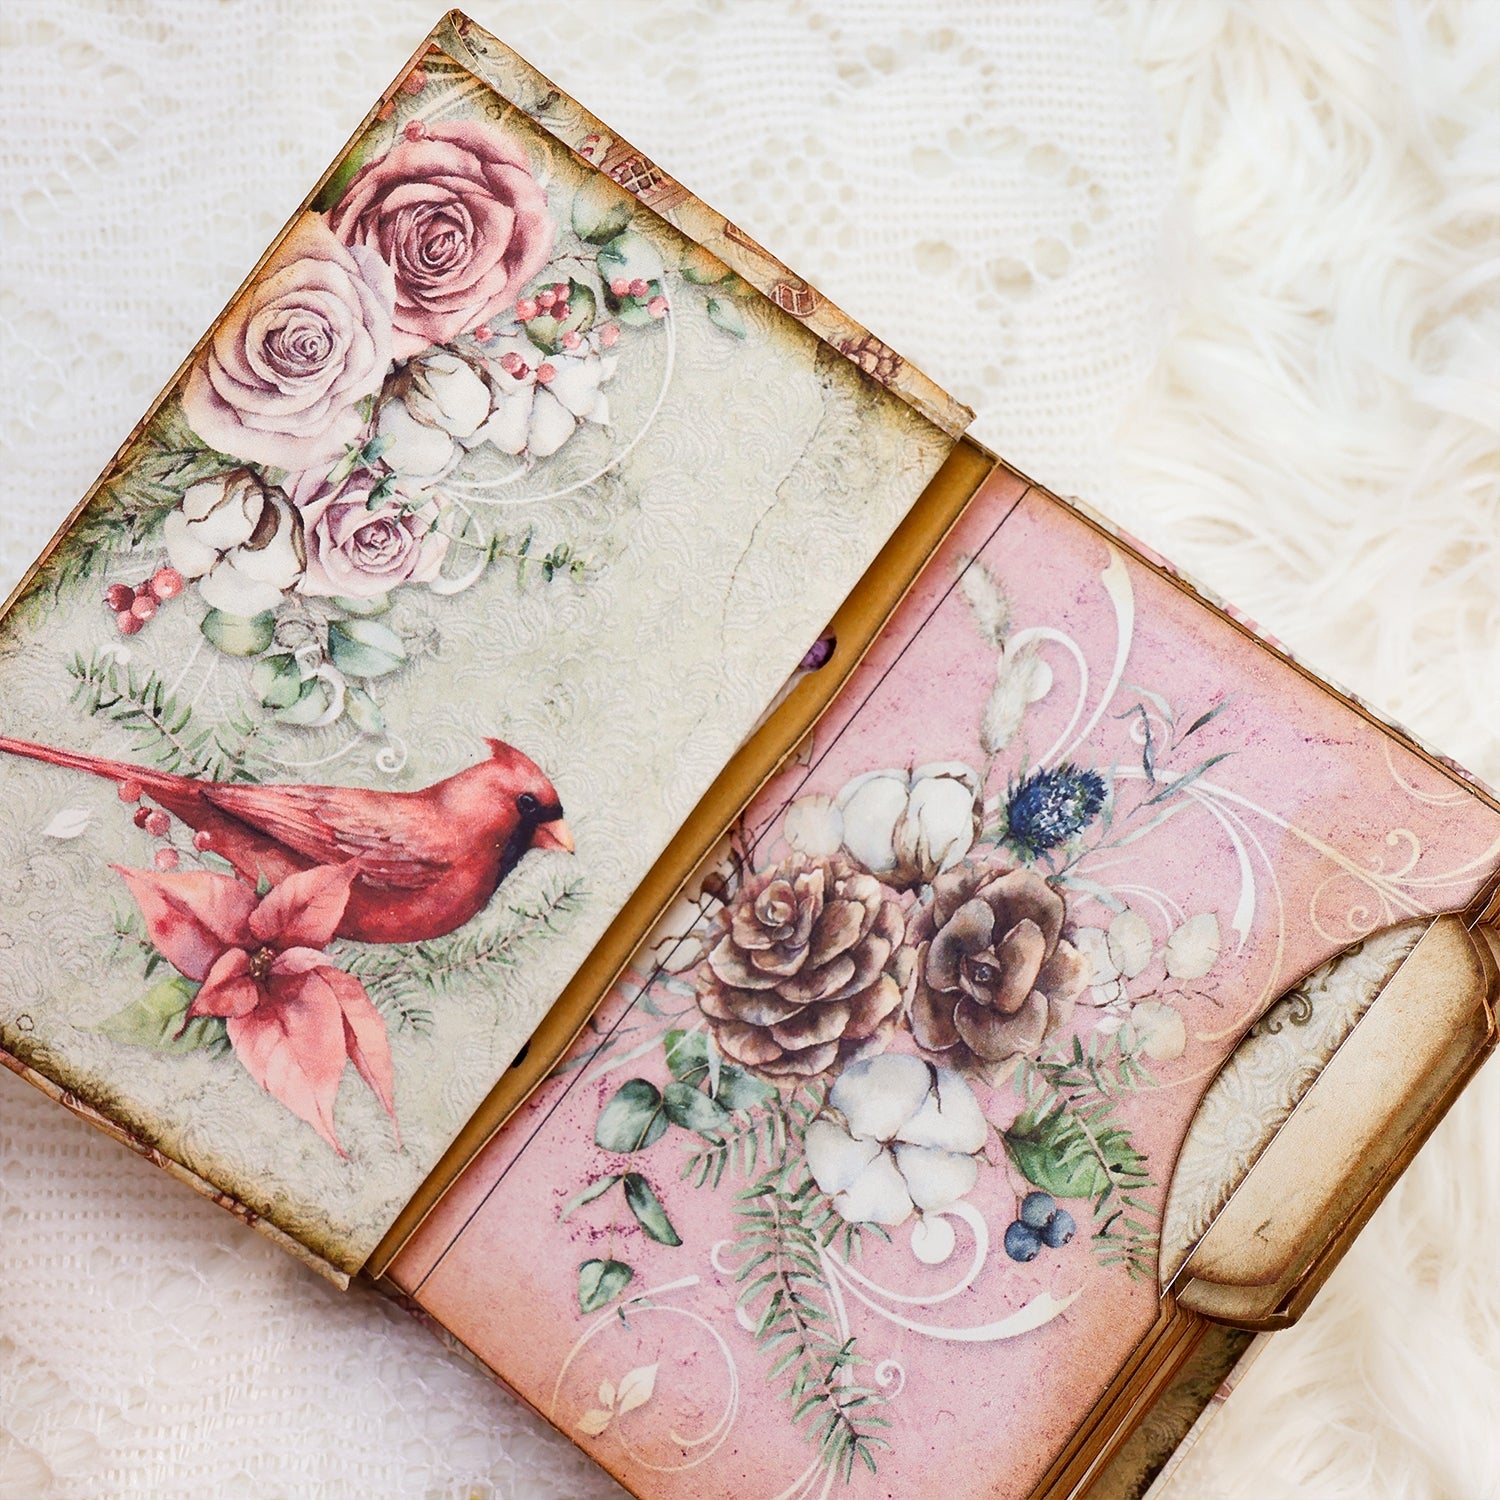 Pink Santa Mini Photo & Notes Album Craft Kit - DIY Gift 7